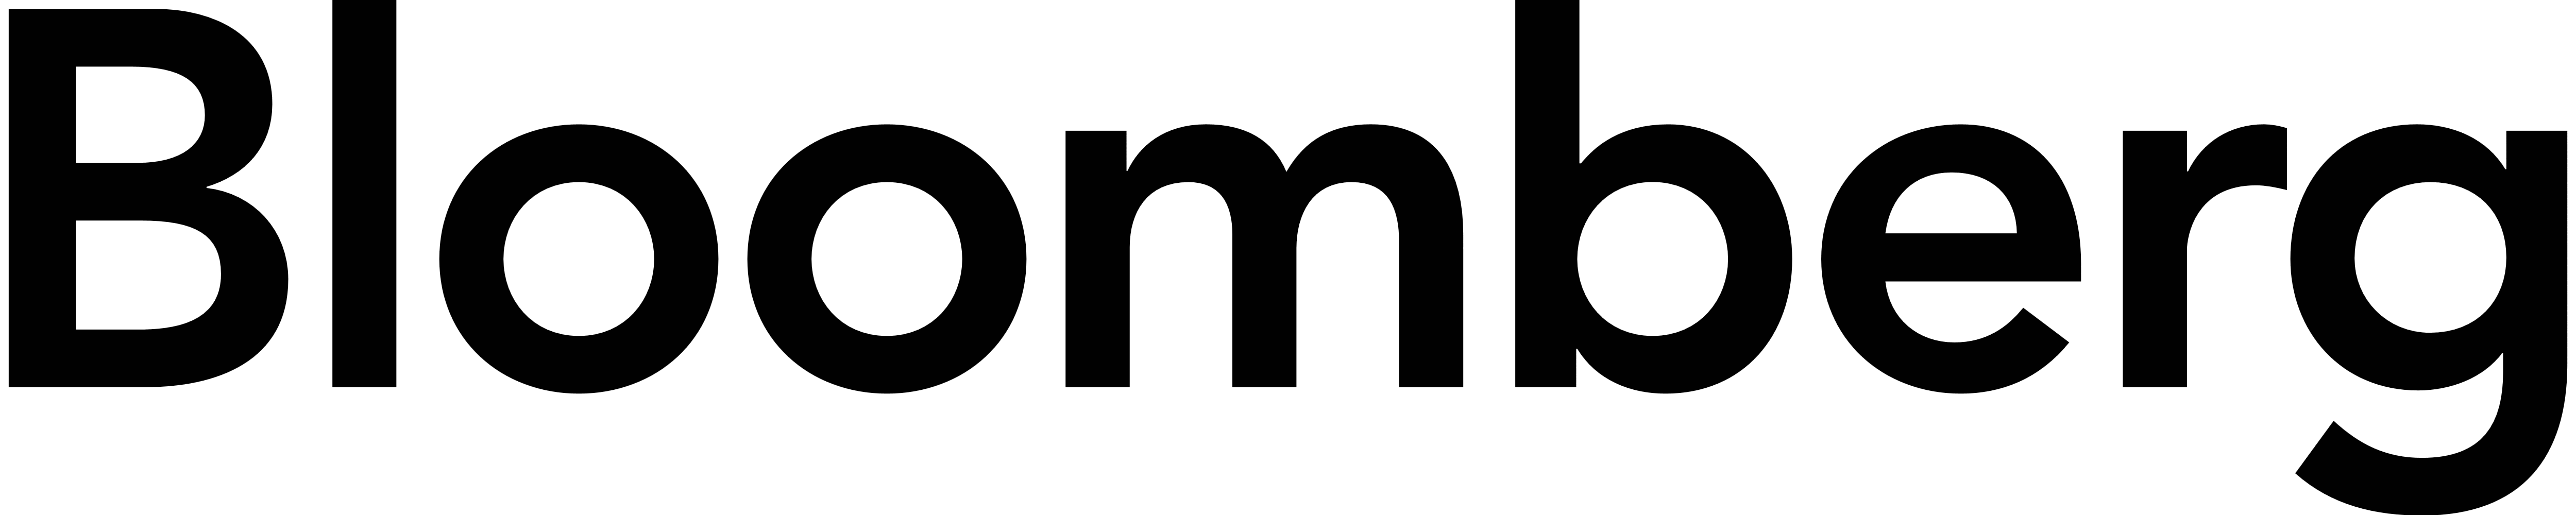 Bnn Bloomberg Logo Clipart (#